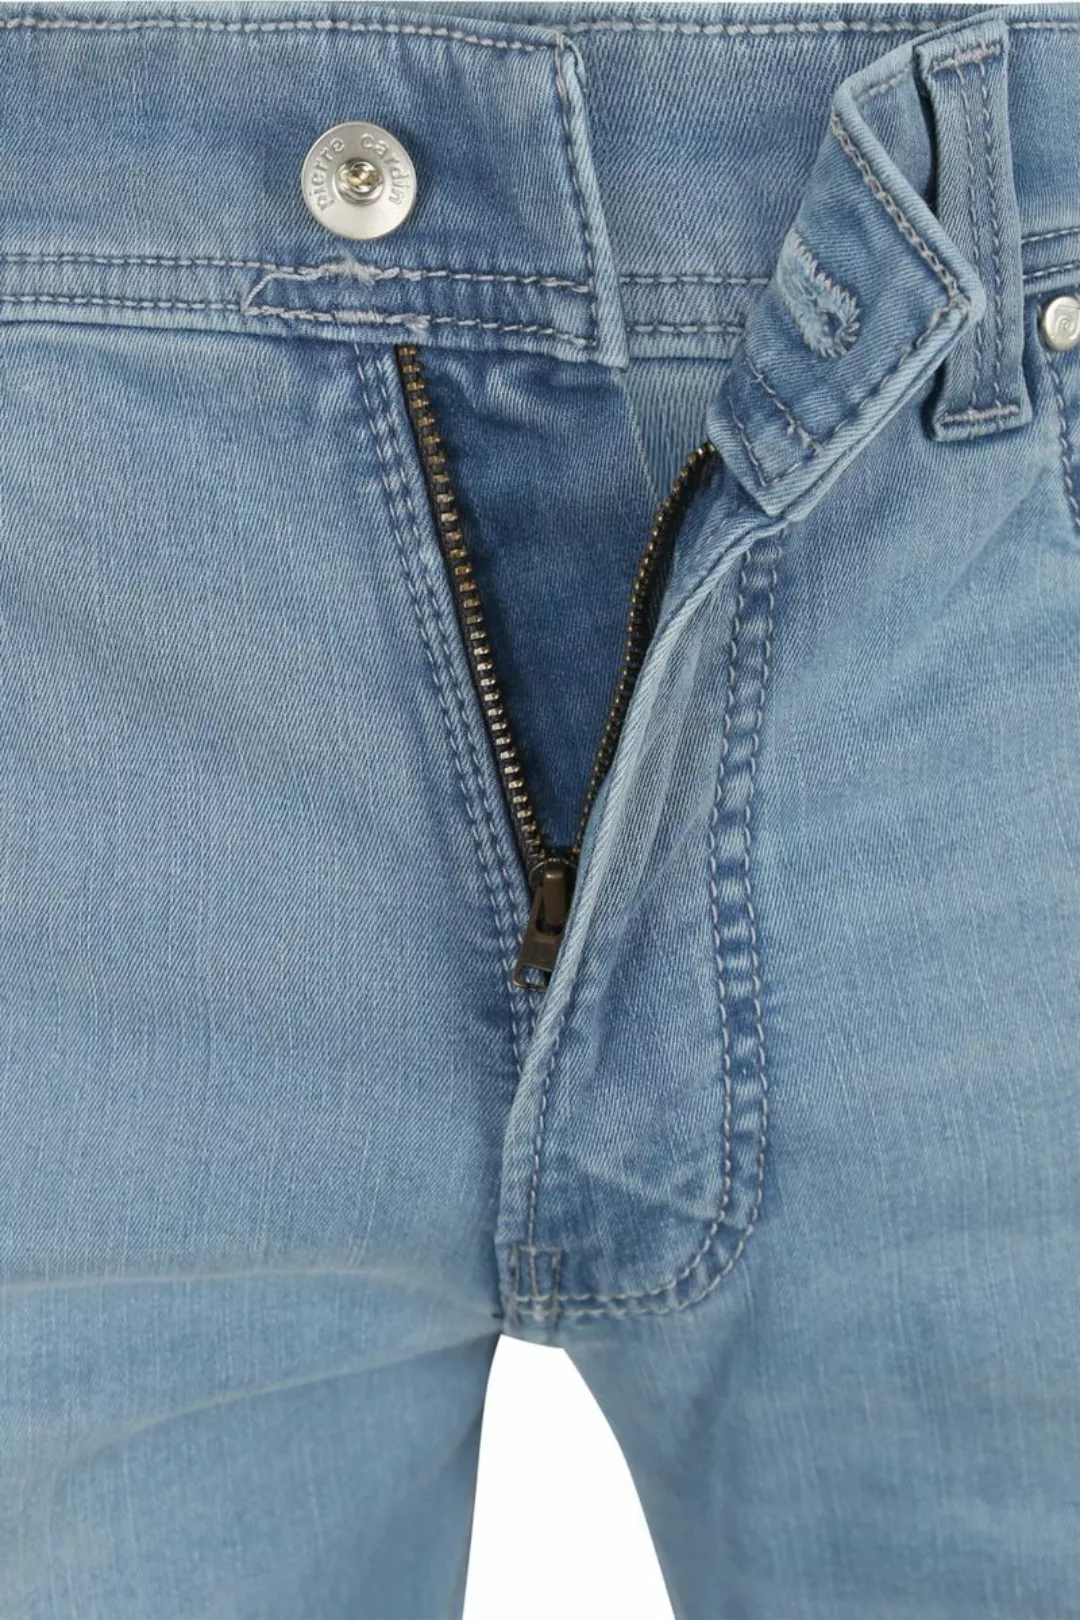 Pierre Cardin Jeans Lyon Tapered Future Flex Hellblau  - Größe W 31 - L 34 günstig online kaufen